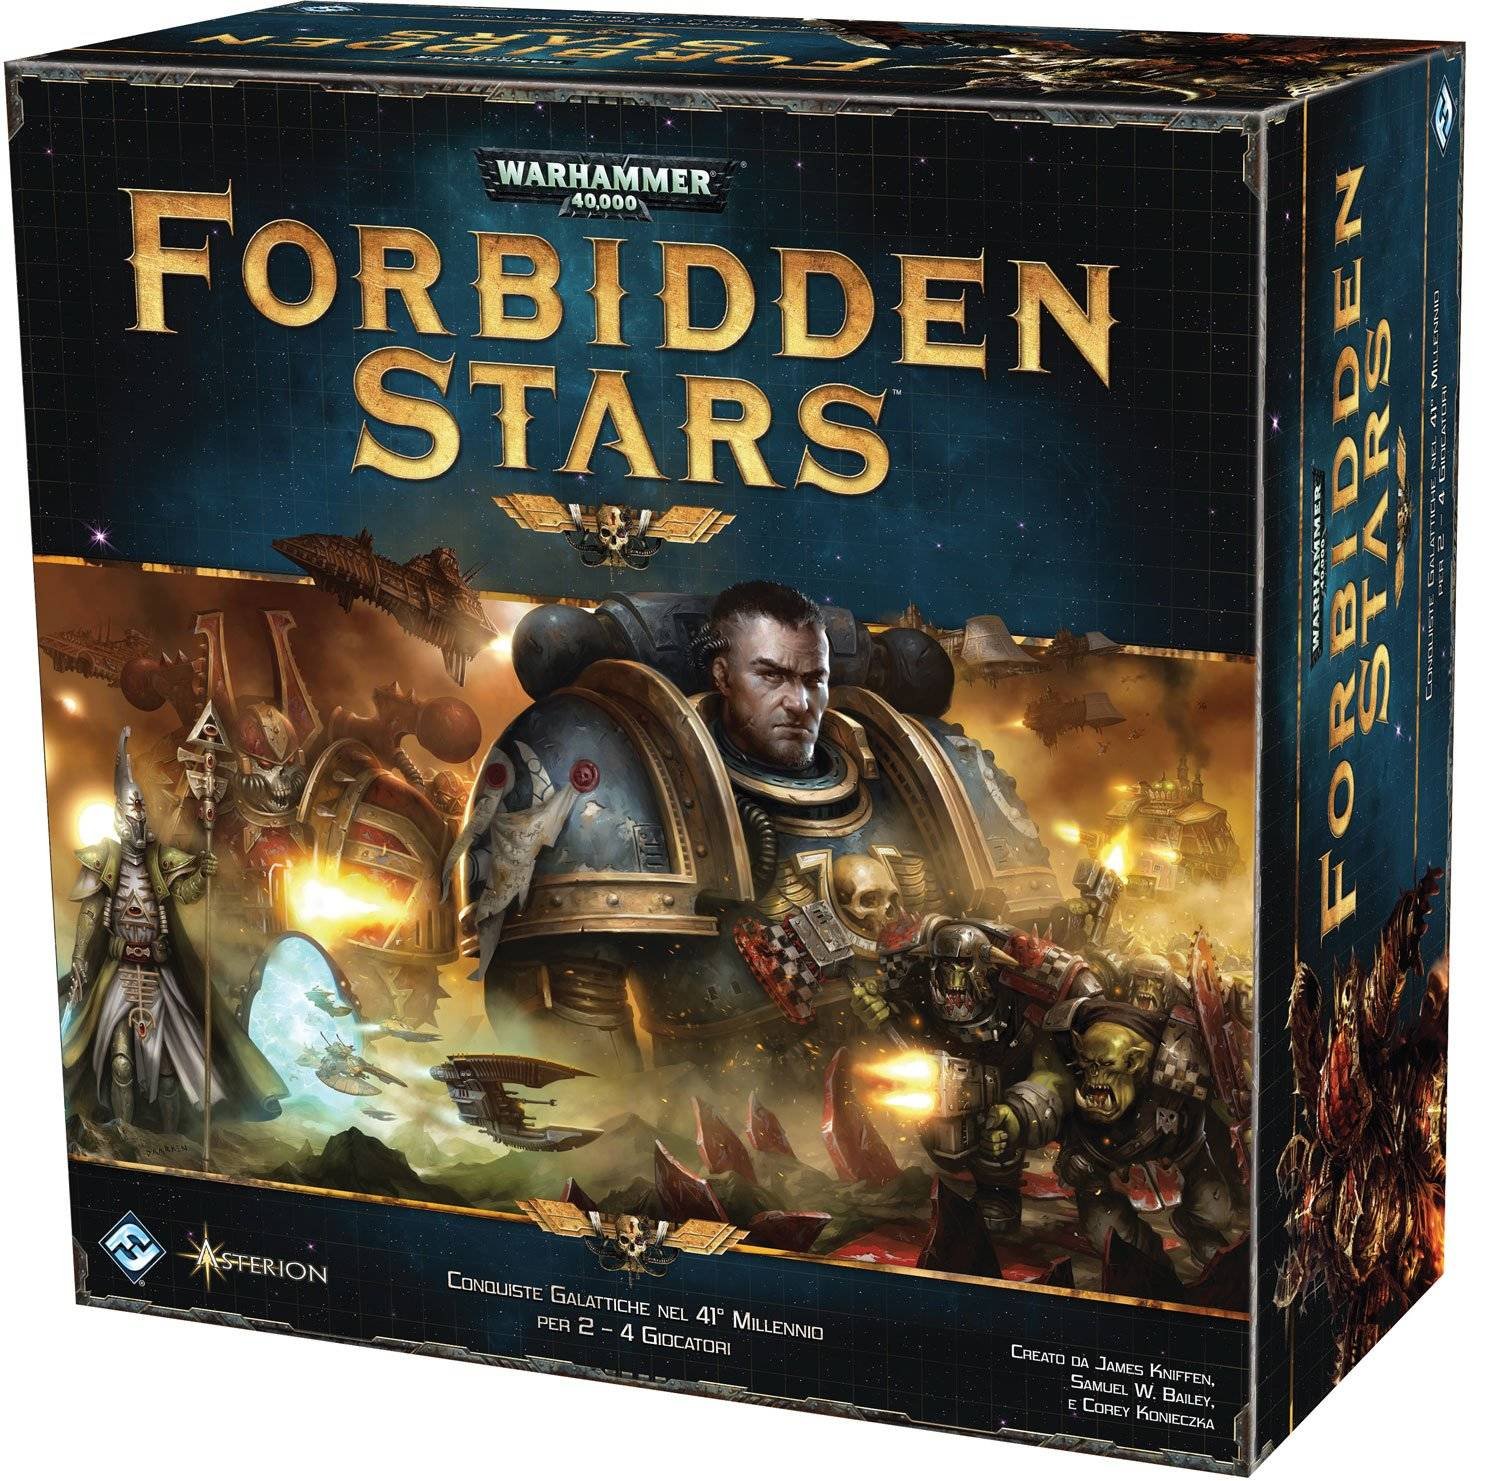 Immagine di Forbidden Star: la recensione. Il gioco da tavolo ambientato nell'universo di Warhammer 40000!